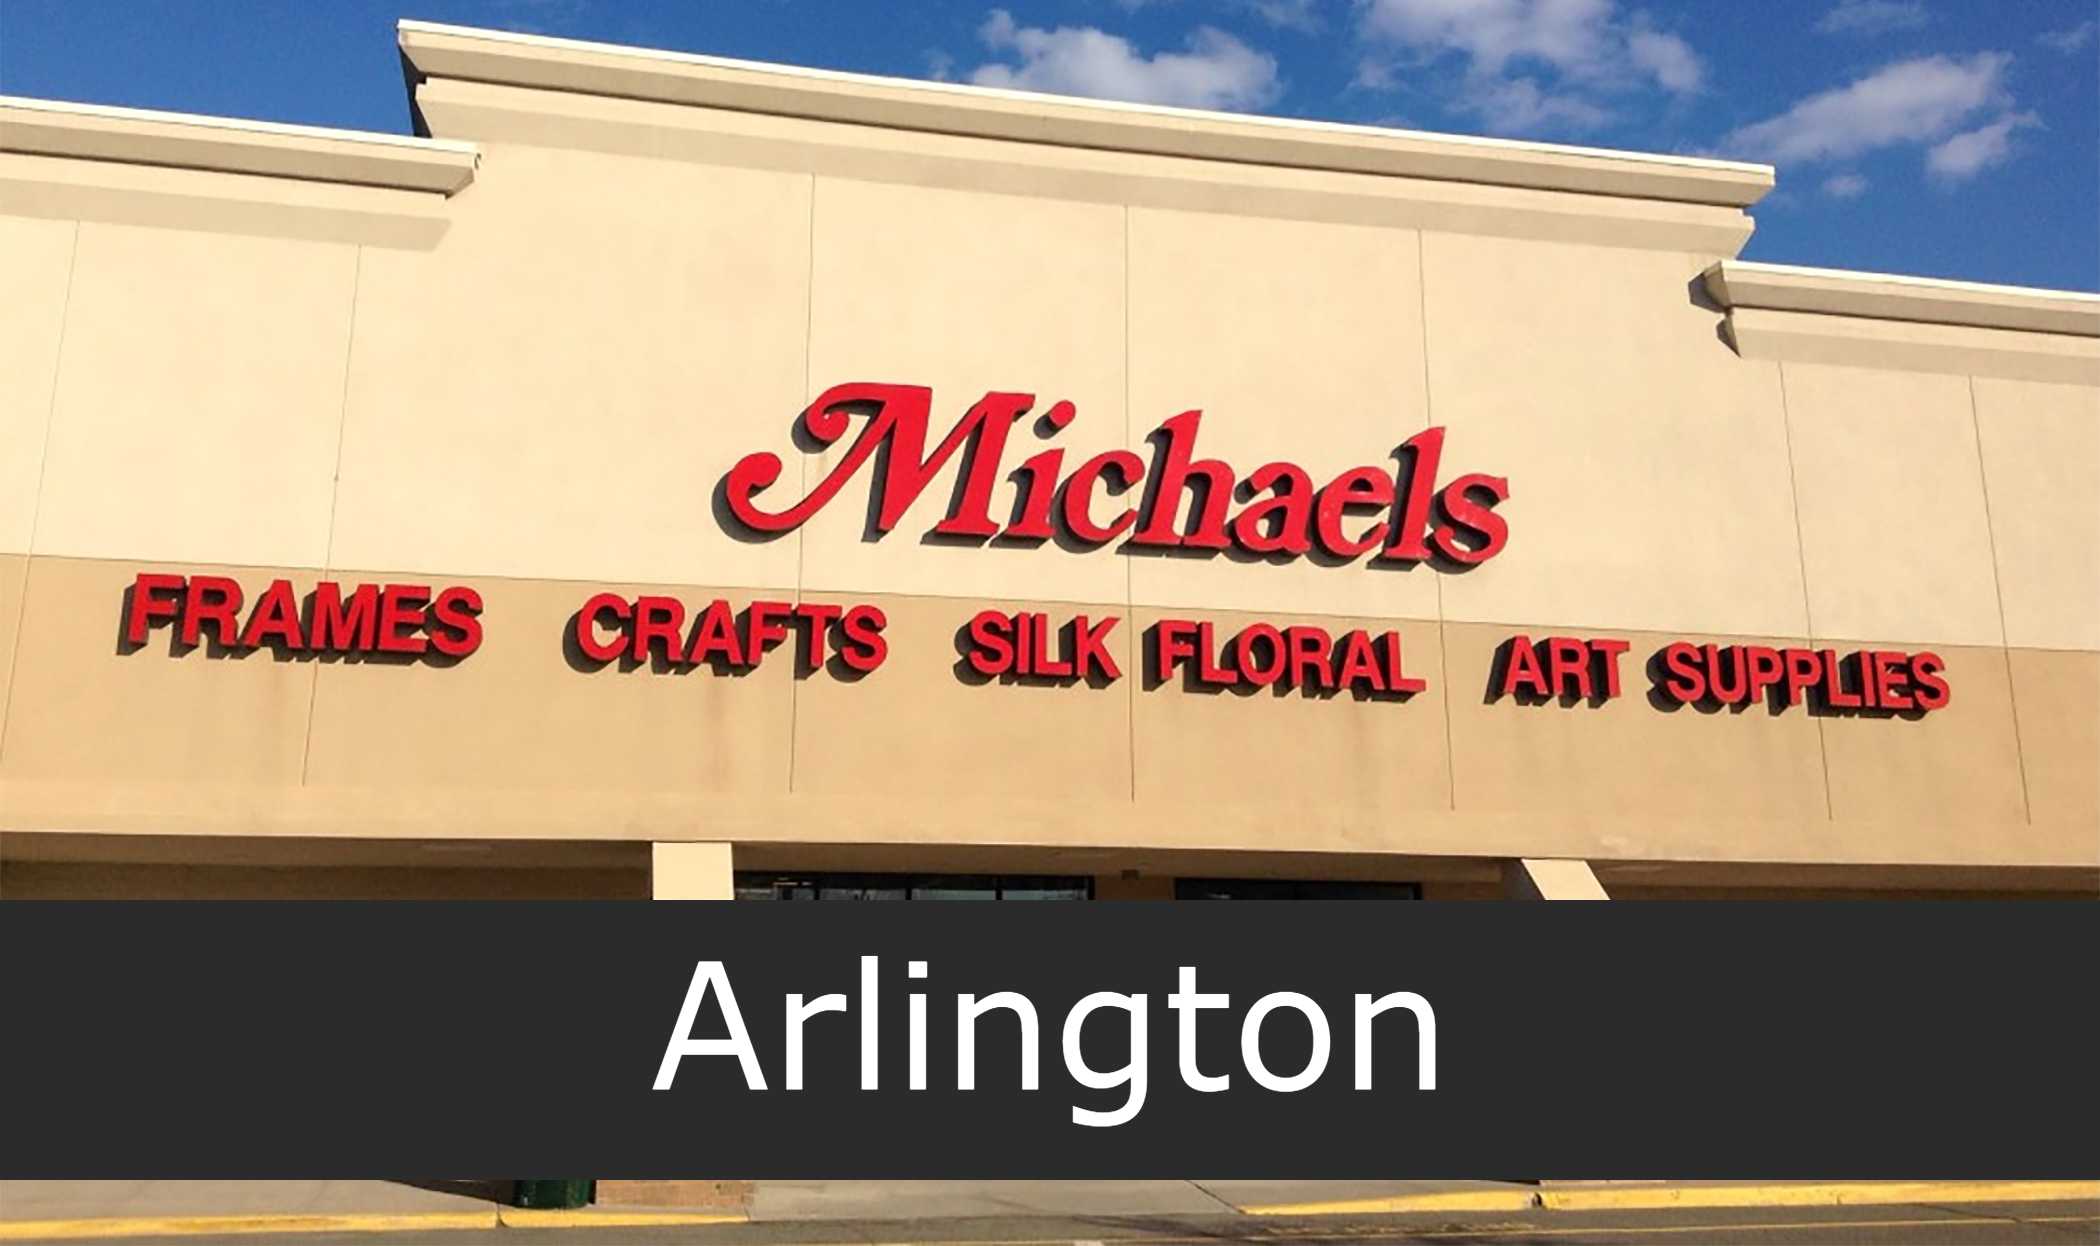 michaels stores Arlington